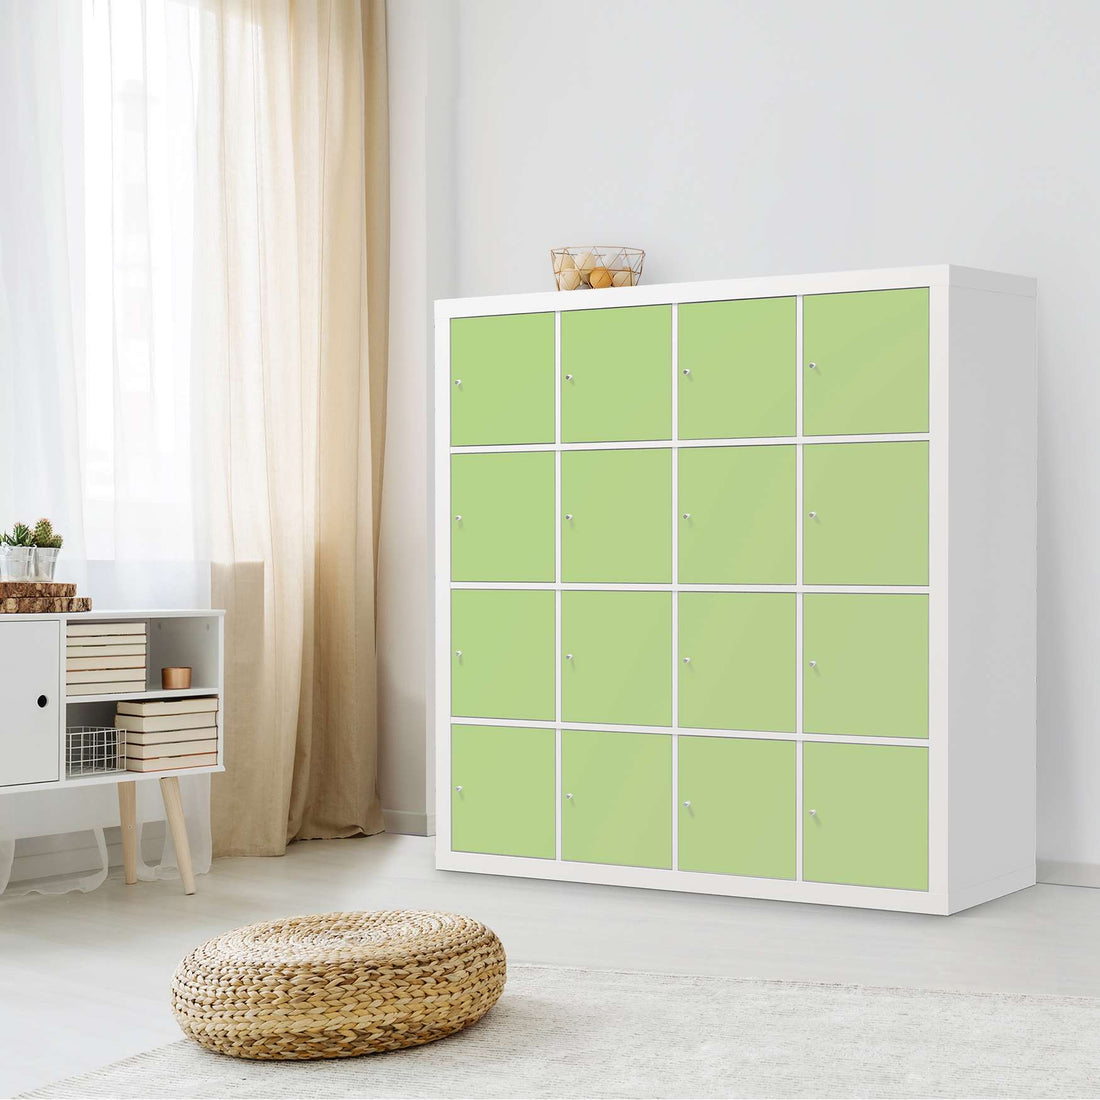 Selbstklebende Folie Hellgrün Light - IKEA Expedit Regal 16 Türen - Wohnzimmer